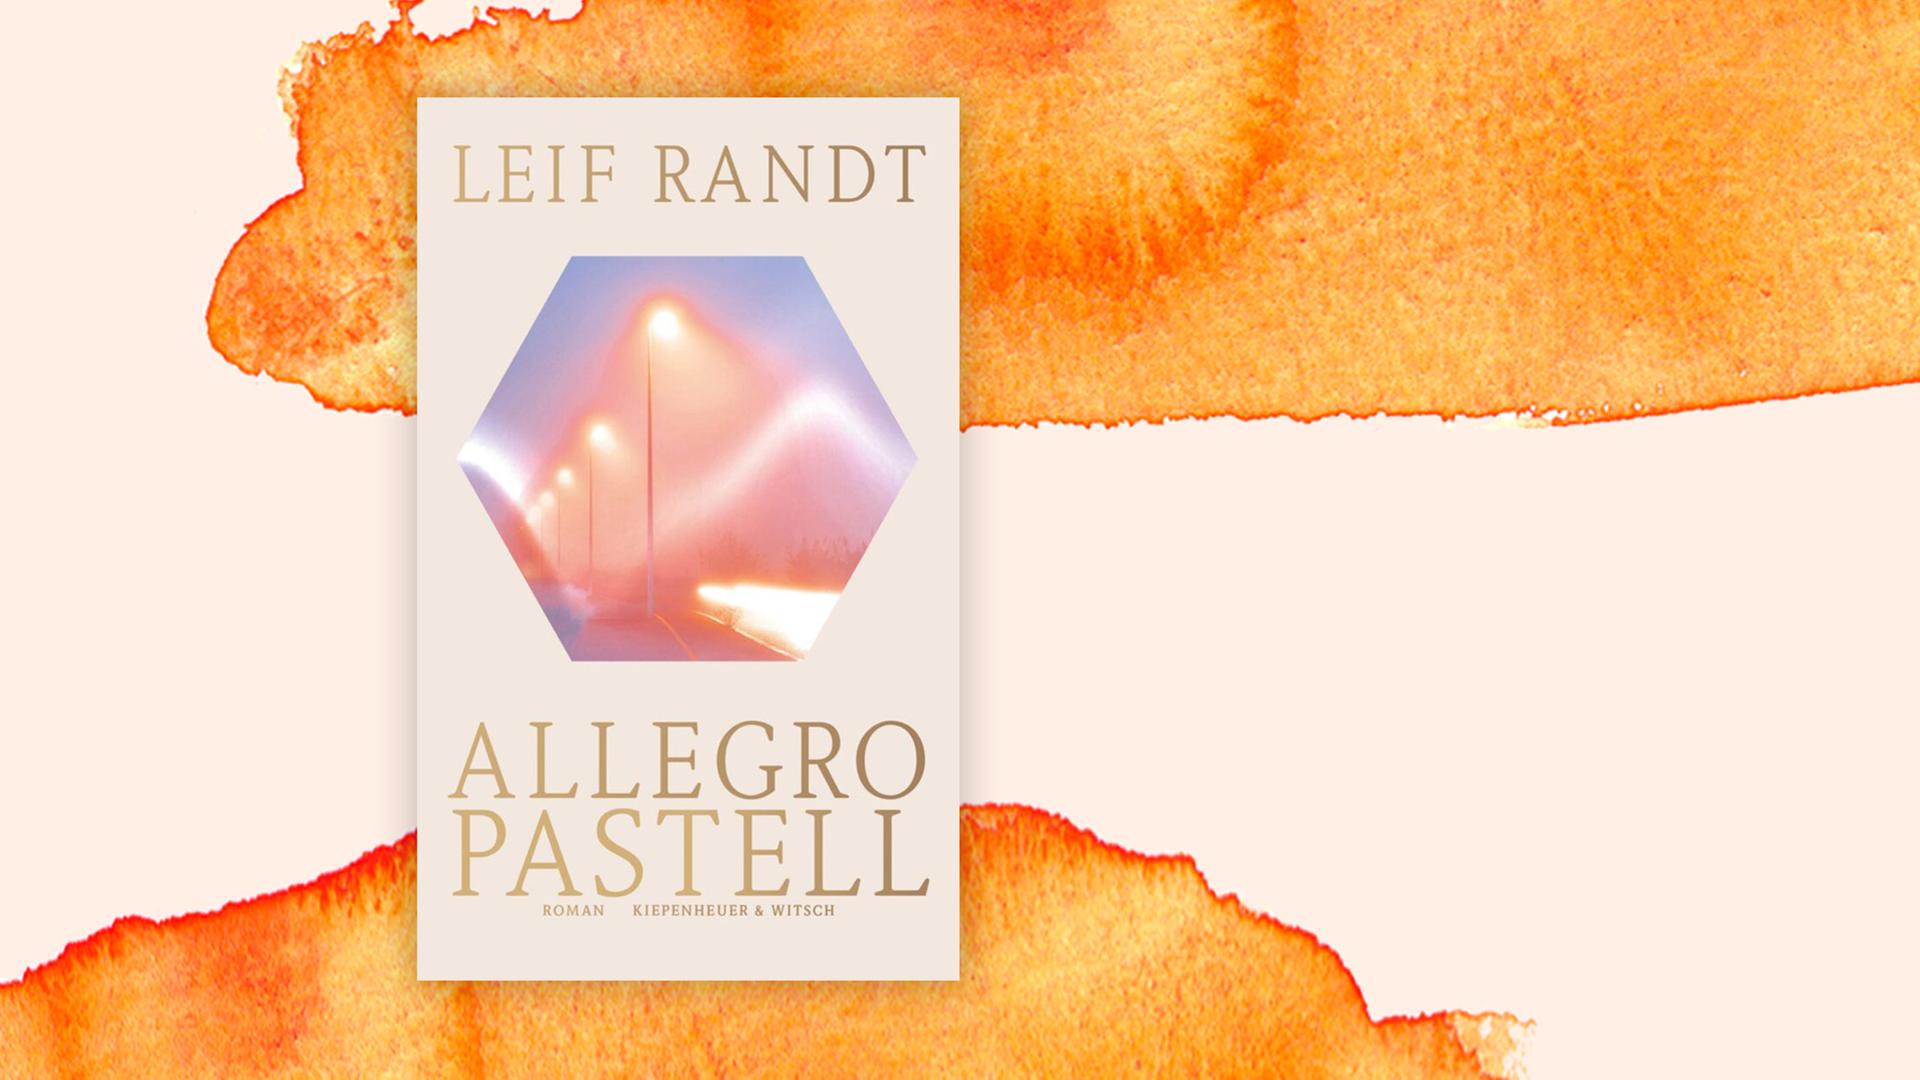 Buchcover zu Leif Randt: "Allegro Pastell"